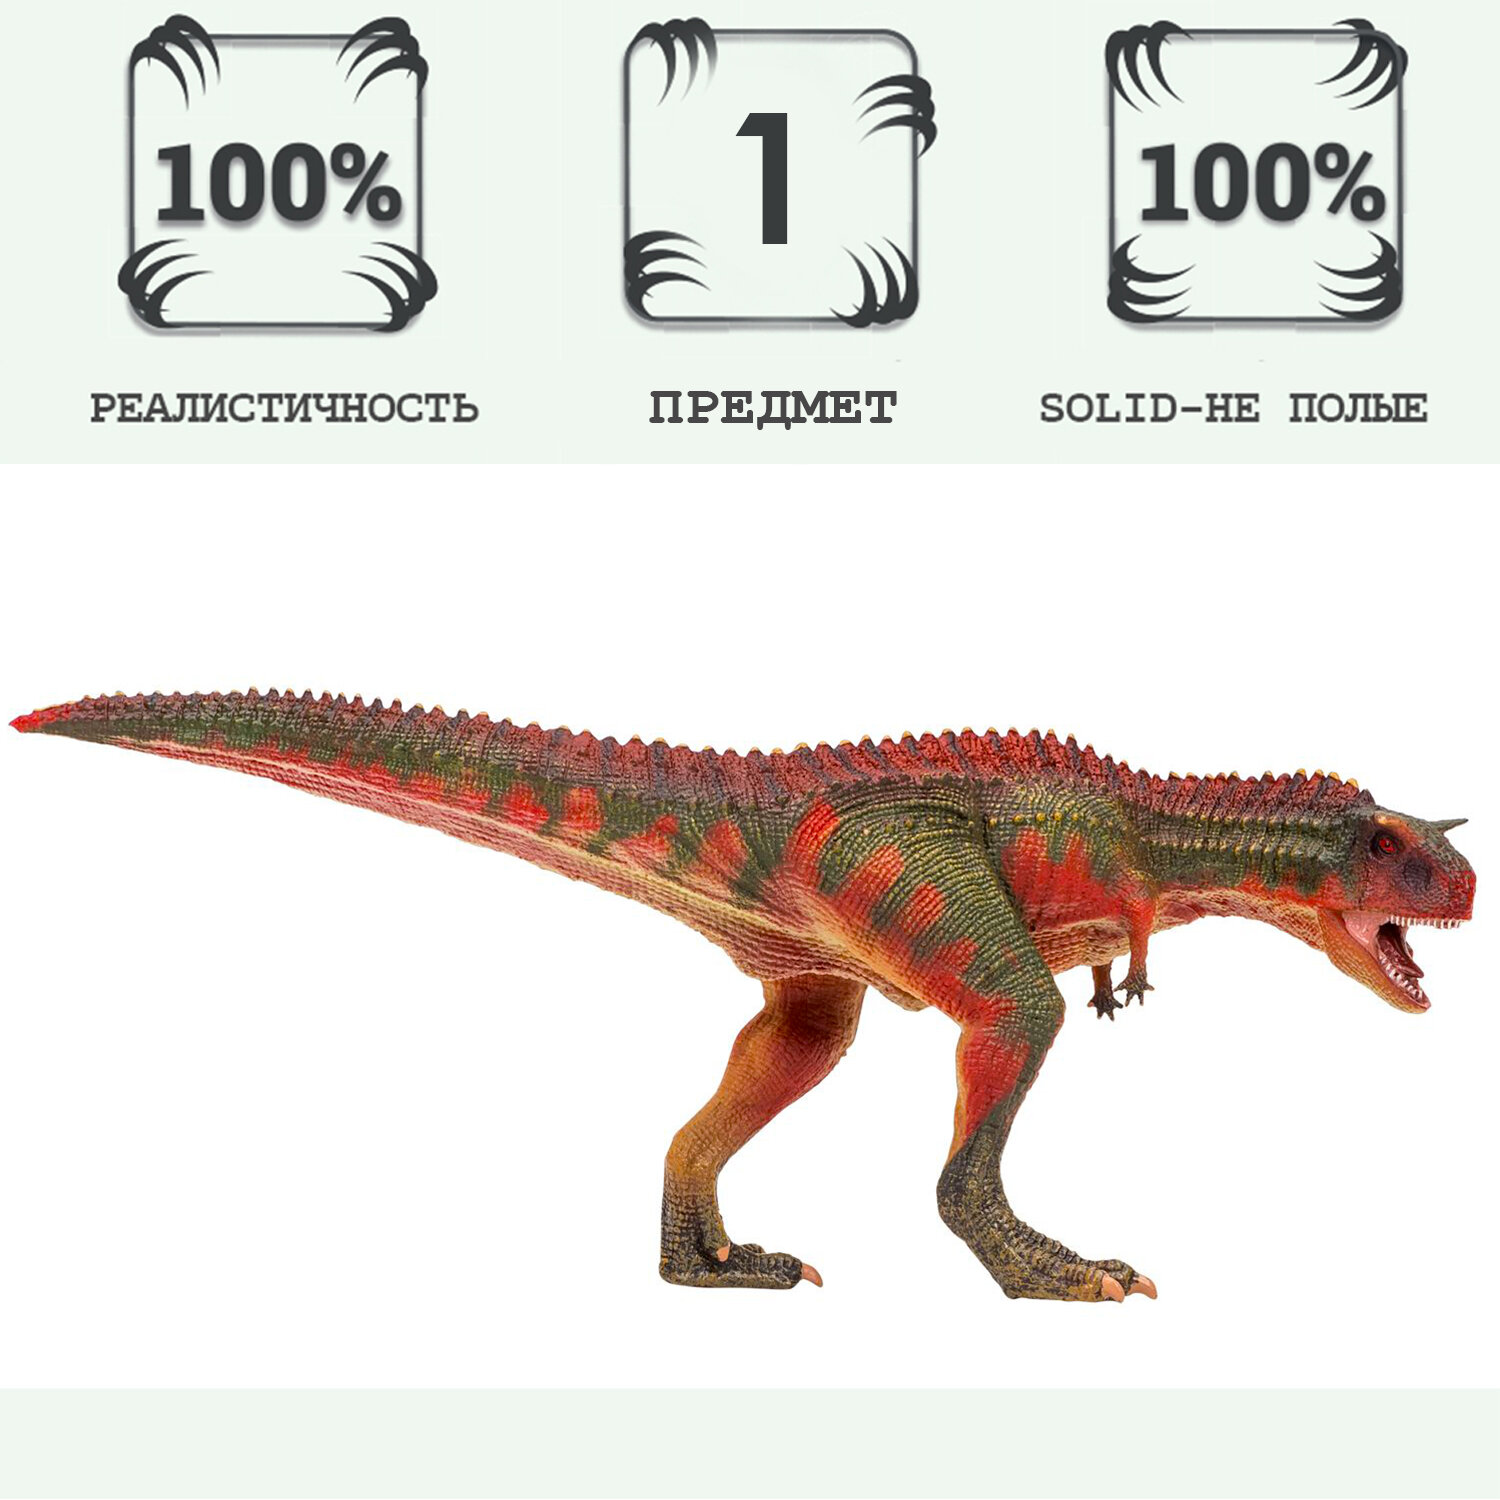 Игрушка динозавр серии "Мир динозавров" Карнотавр, фигурка длиной 30 см